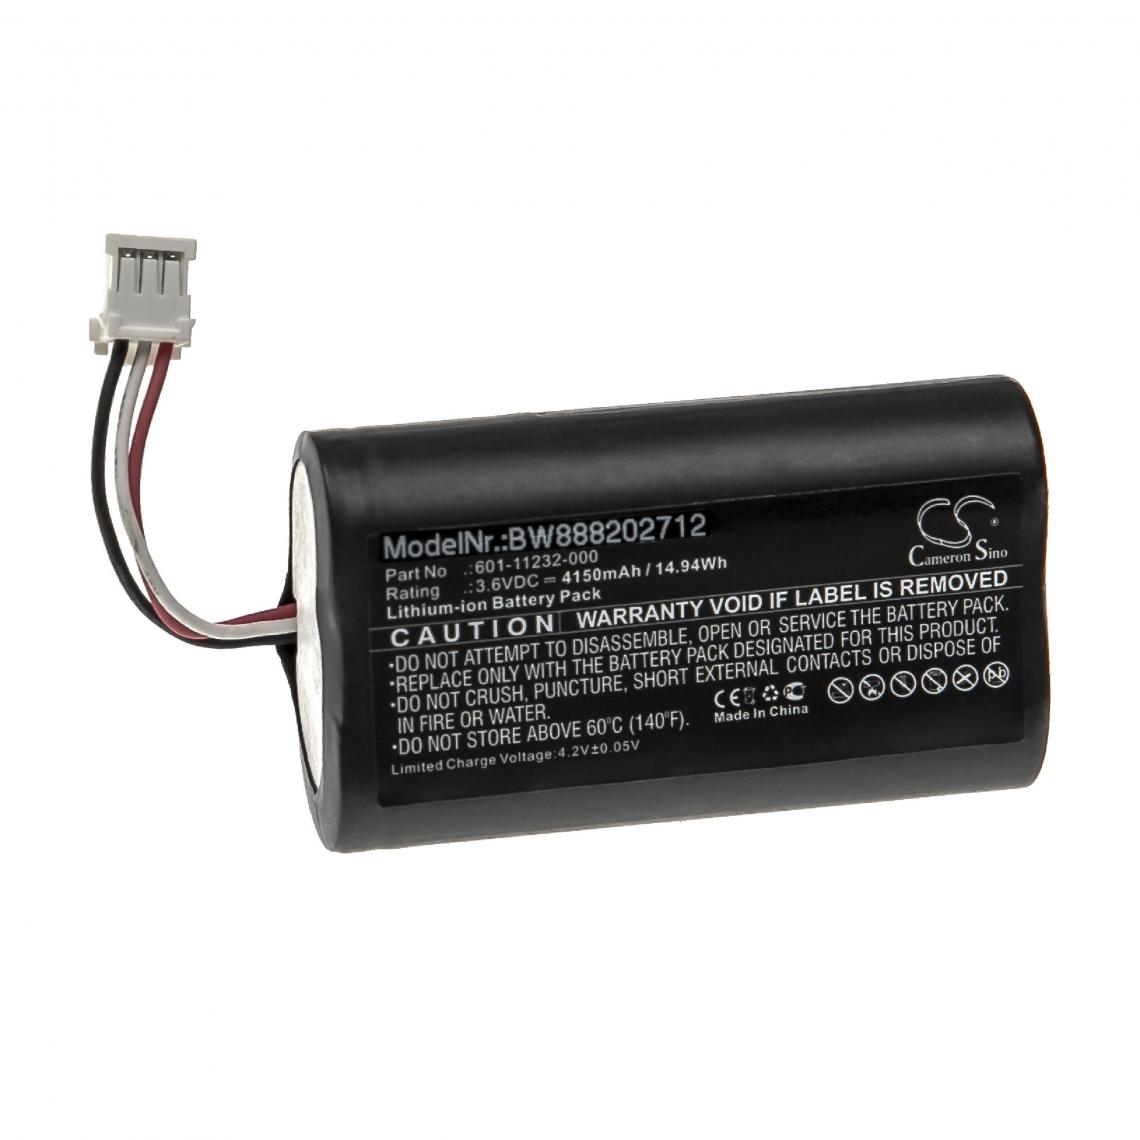 Vhbw - vhbw Batterie compatible avec GoPro Karma Remote Control, KWBH1 telécommande Remote Control (4150mAh, 3,6V, Li-ion) - Batteries et chargeurs